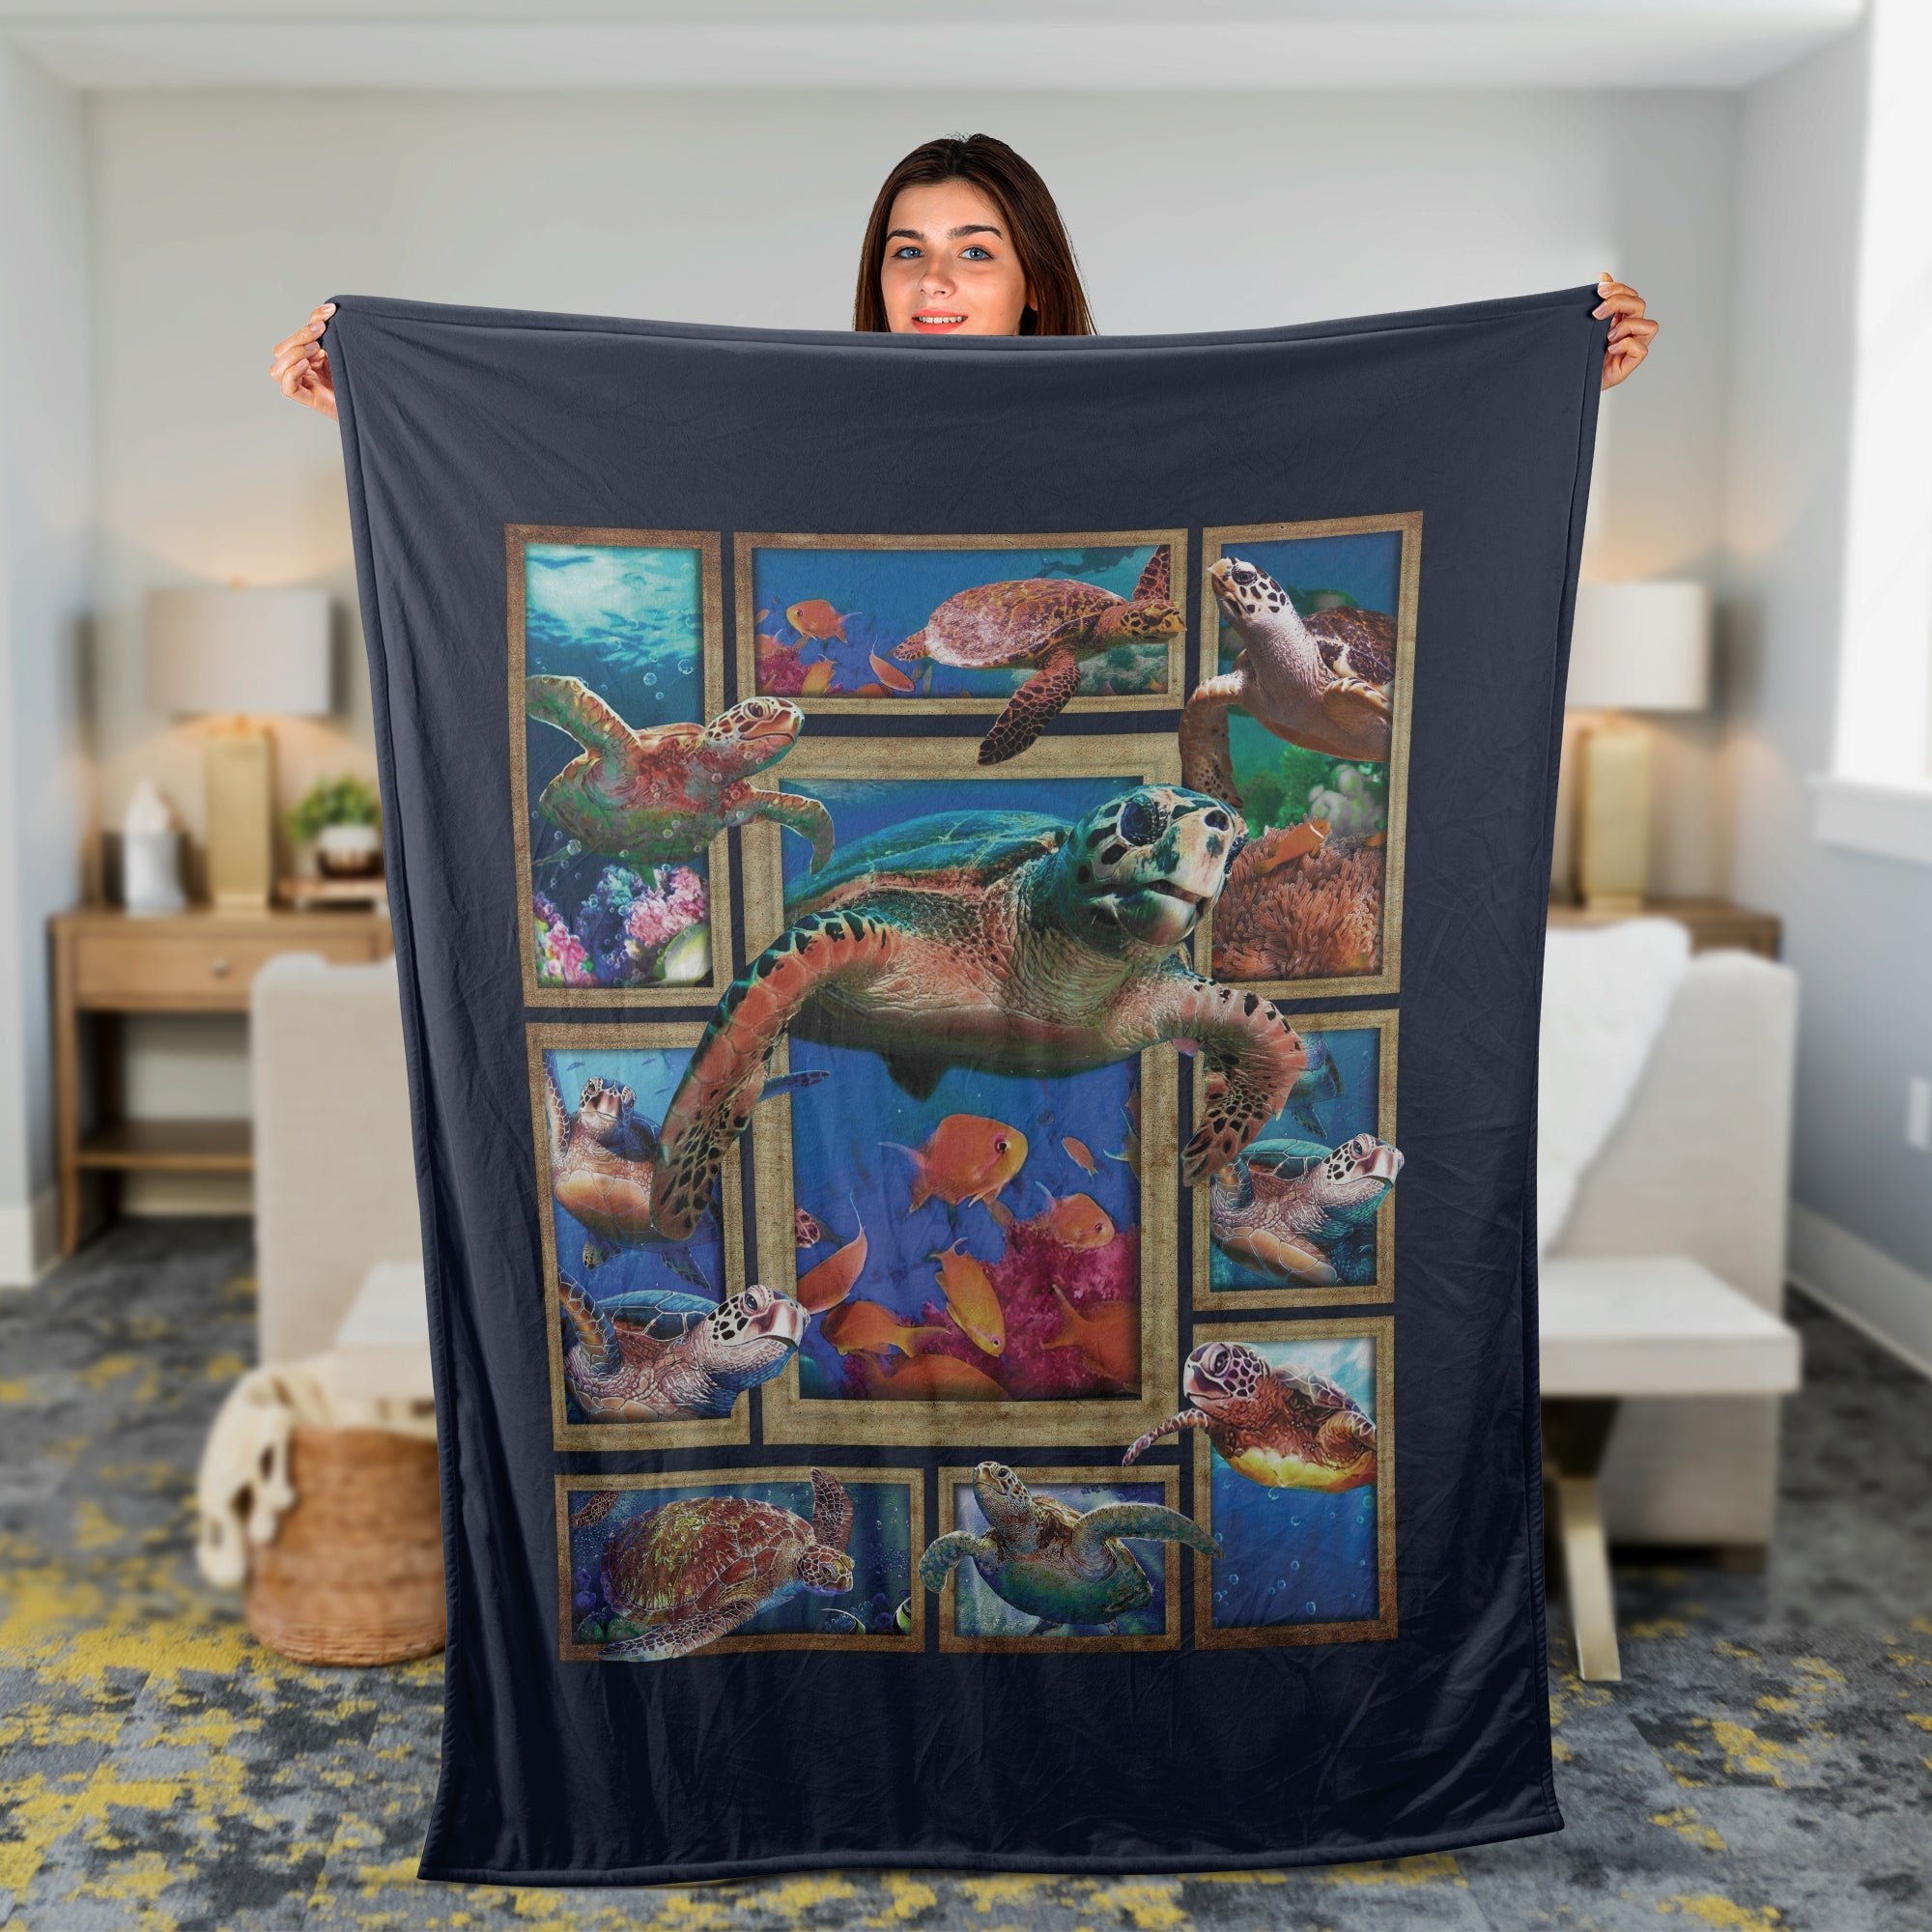 Ocean Throw Blanket, Sea Turtle Blanket, Inspirational Gift - Watercolor Sea Turtle, Amazing Ocean Drawing, Fish Painting